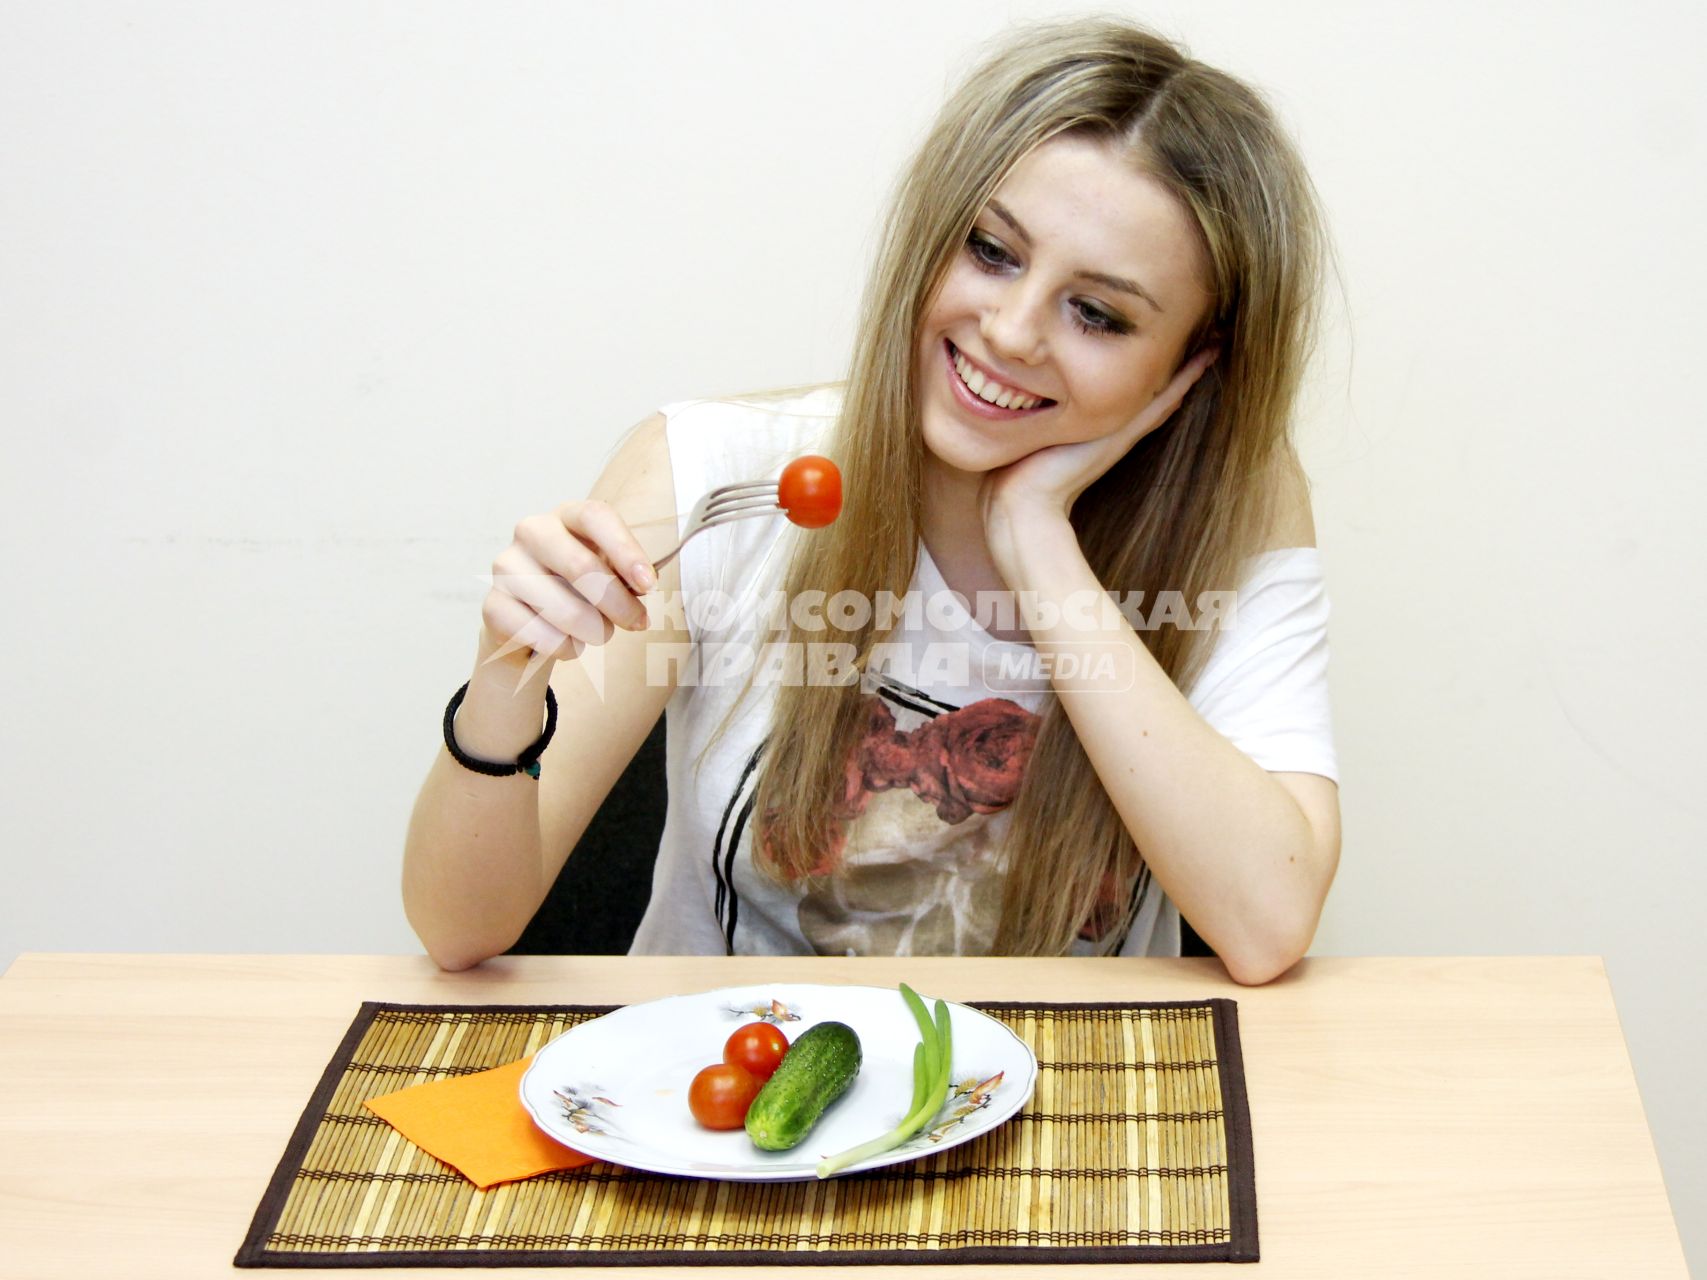 Девушка сидит за столом перед тарелкой с овощами и кушает томат.